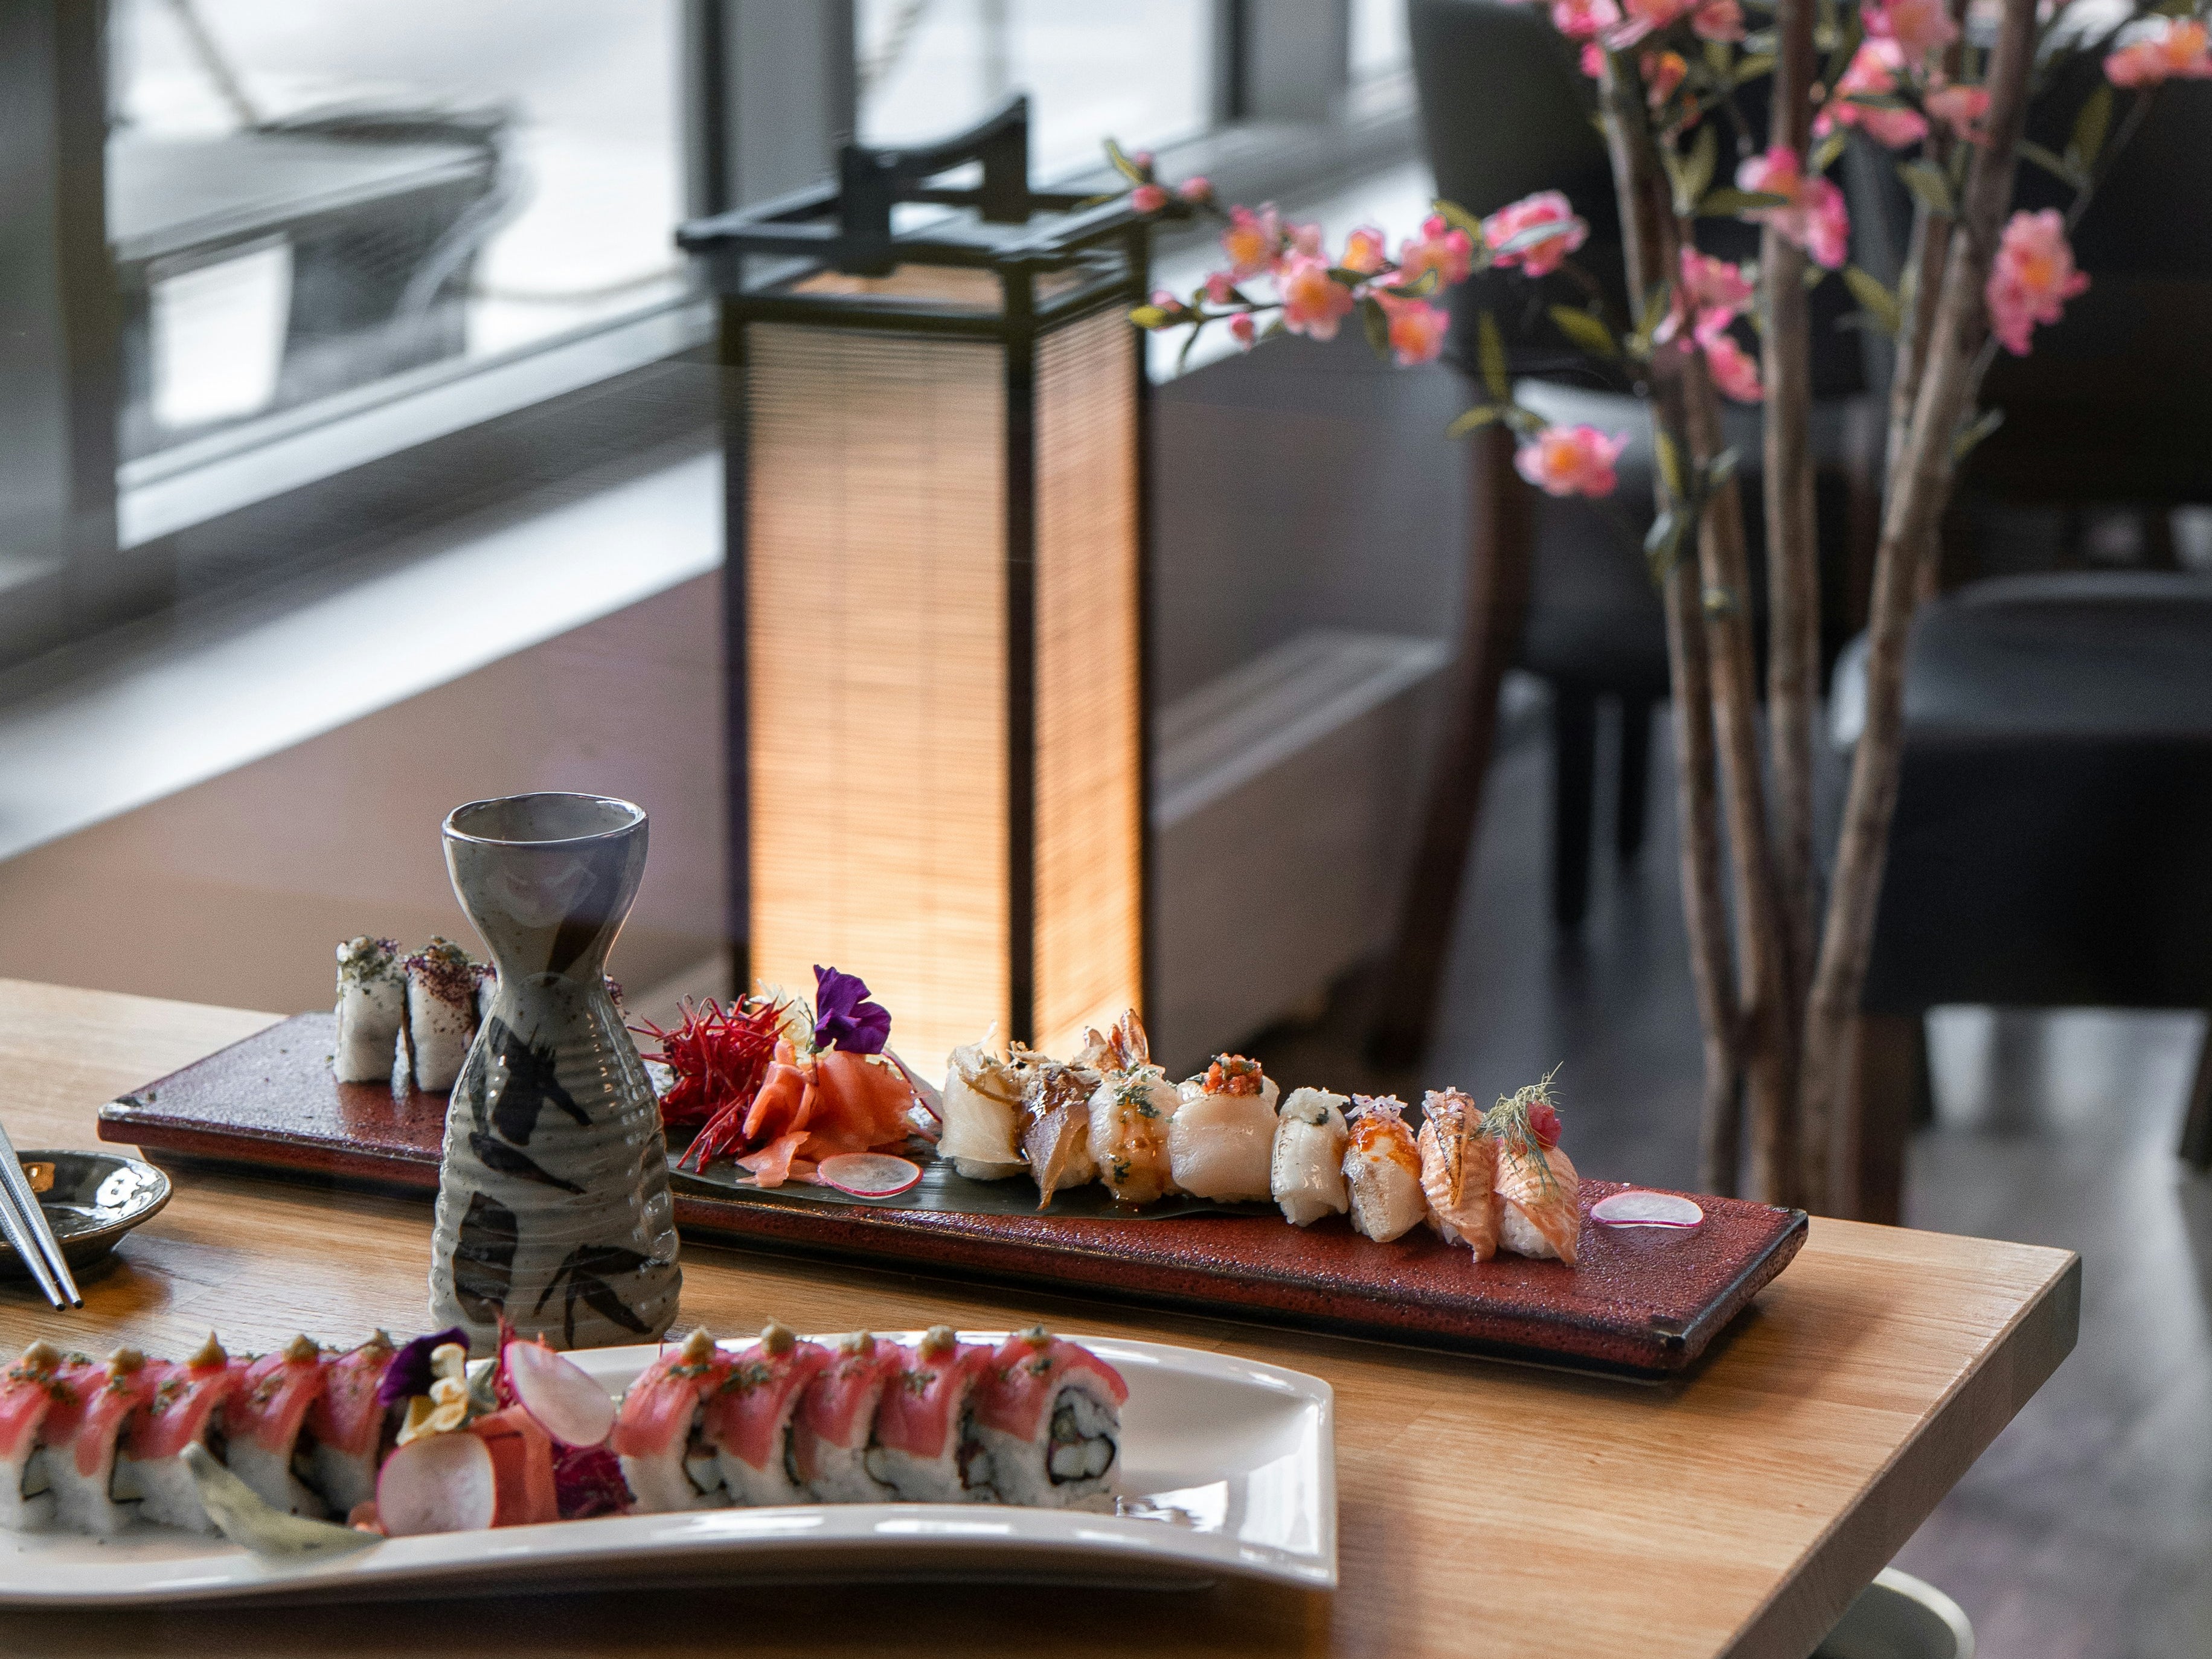 sake and sushi, as featured in the SingleThread Wines blog on sake pairing, sake and unagi sauce